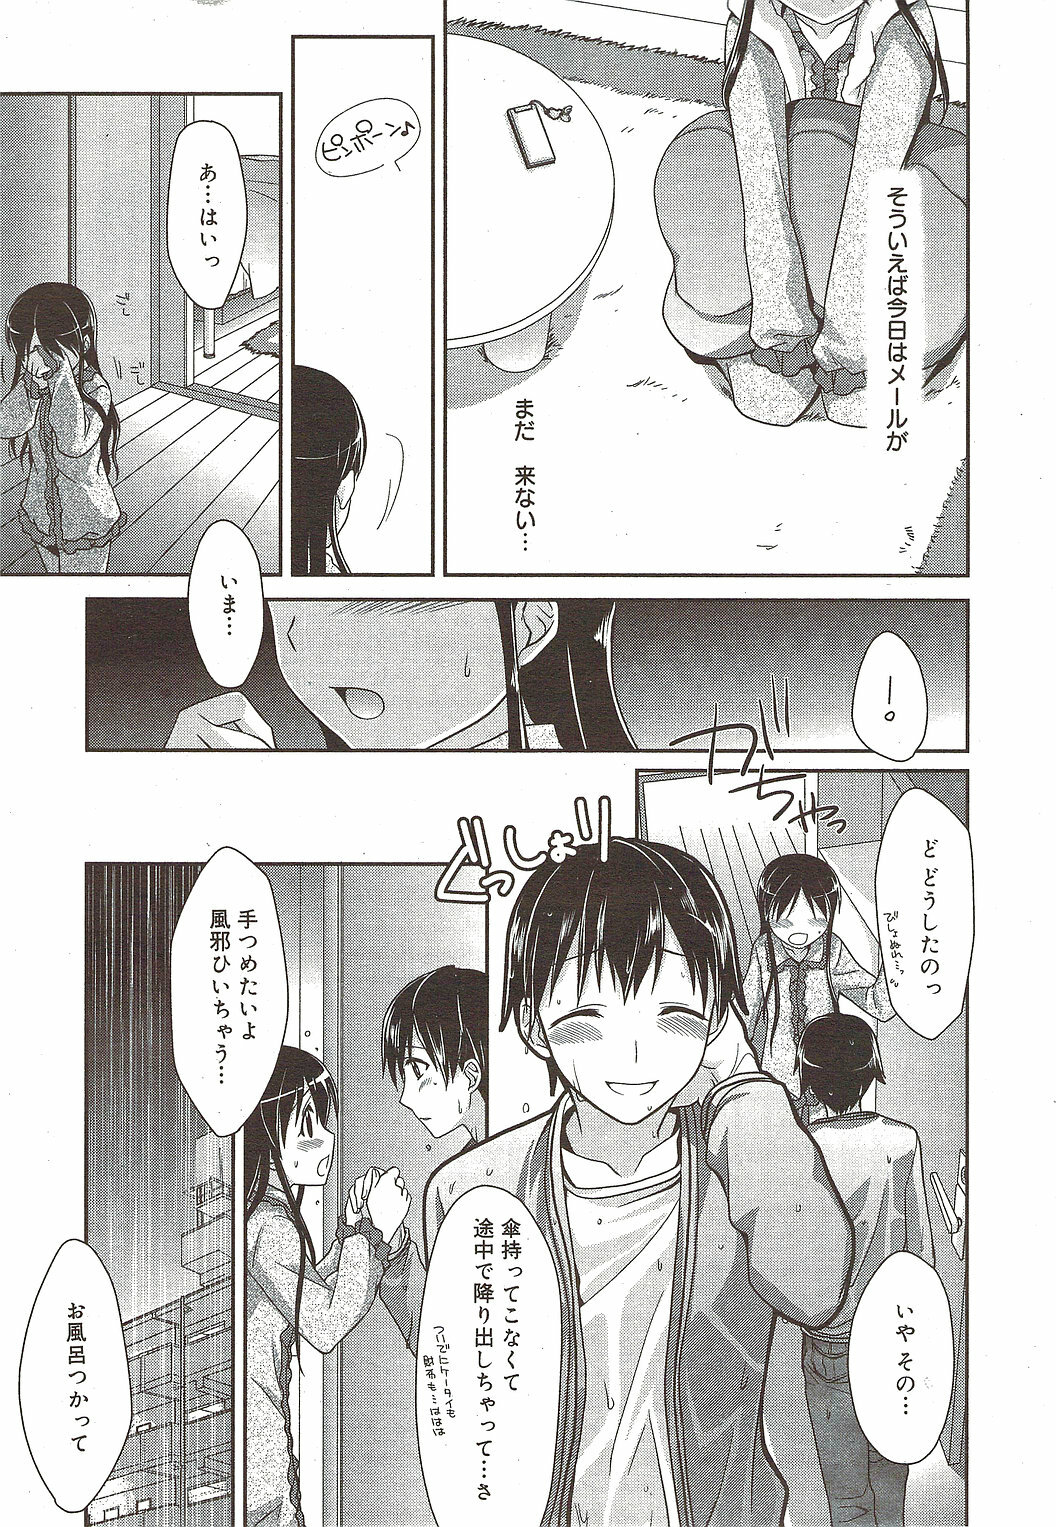 Manga Bangaichi 2010-01 page 25 full